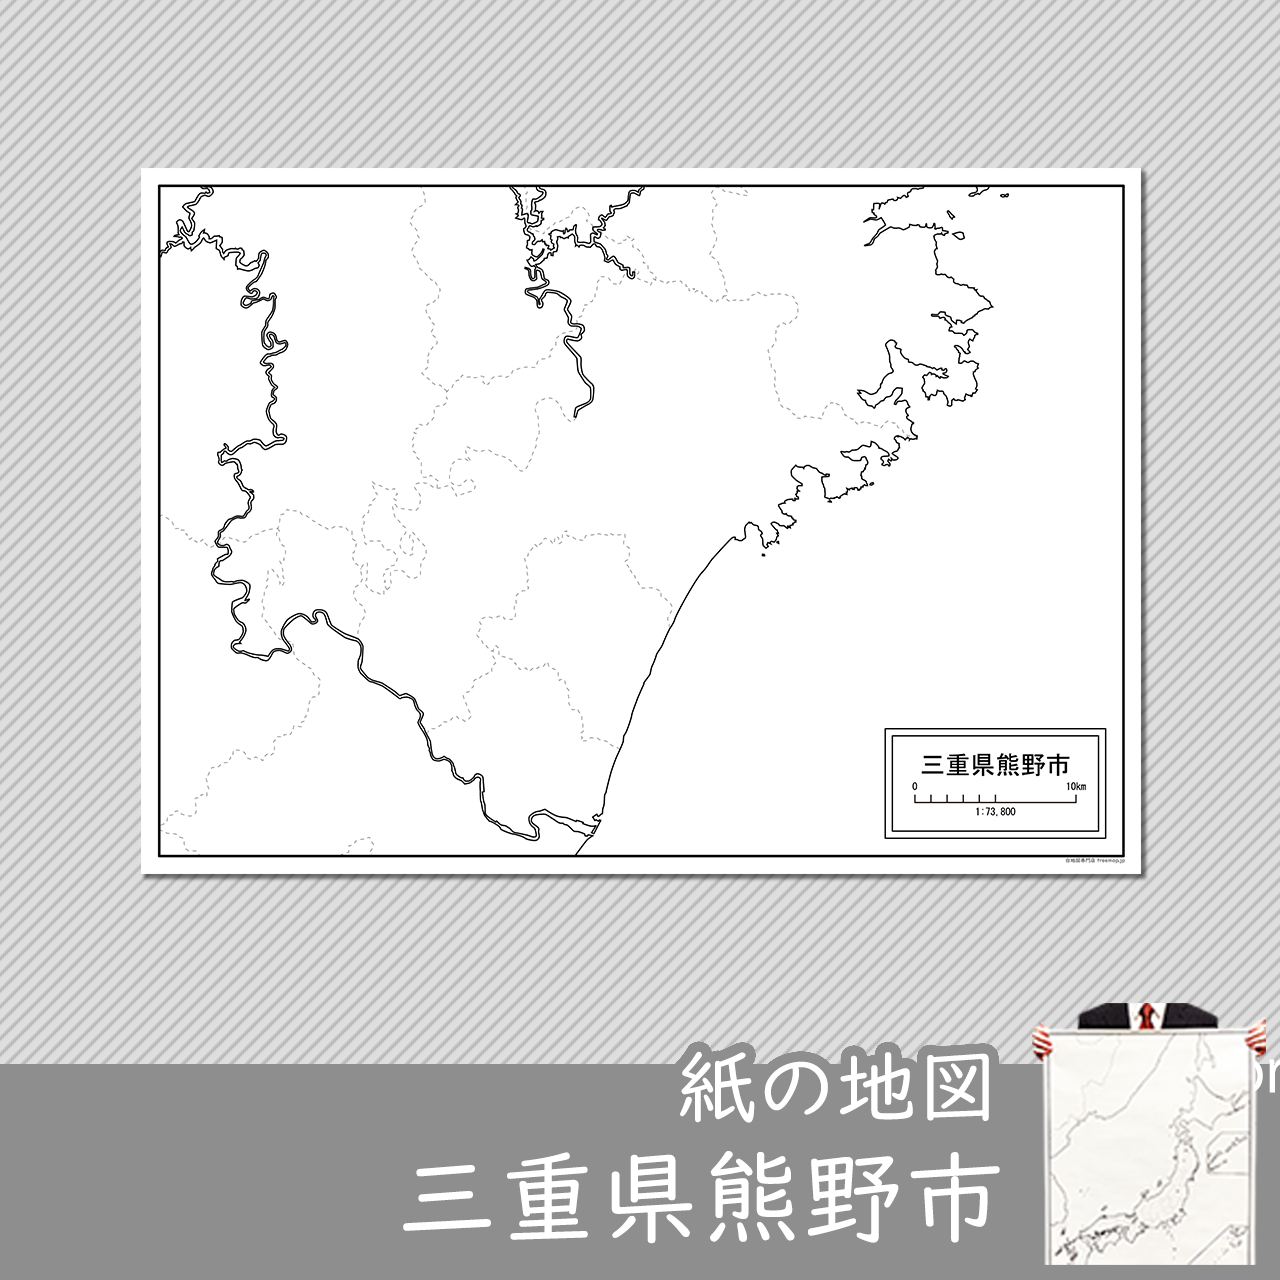 熊野市の紙の白地図のサムネイル